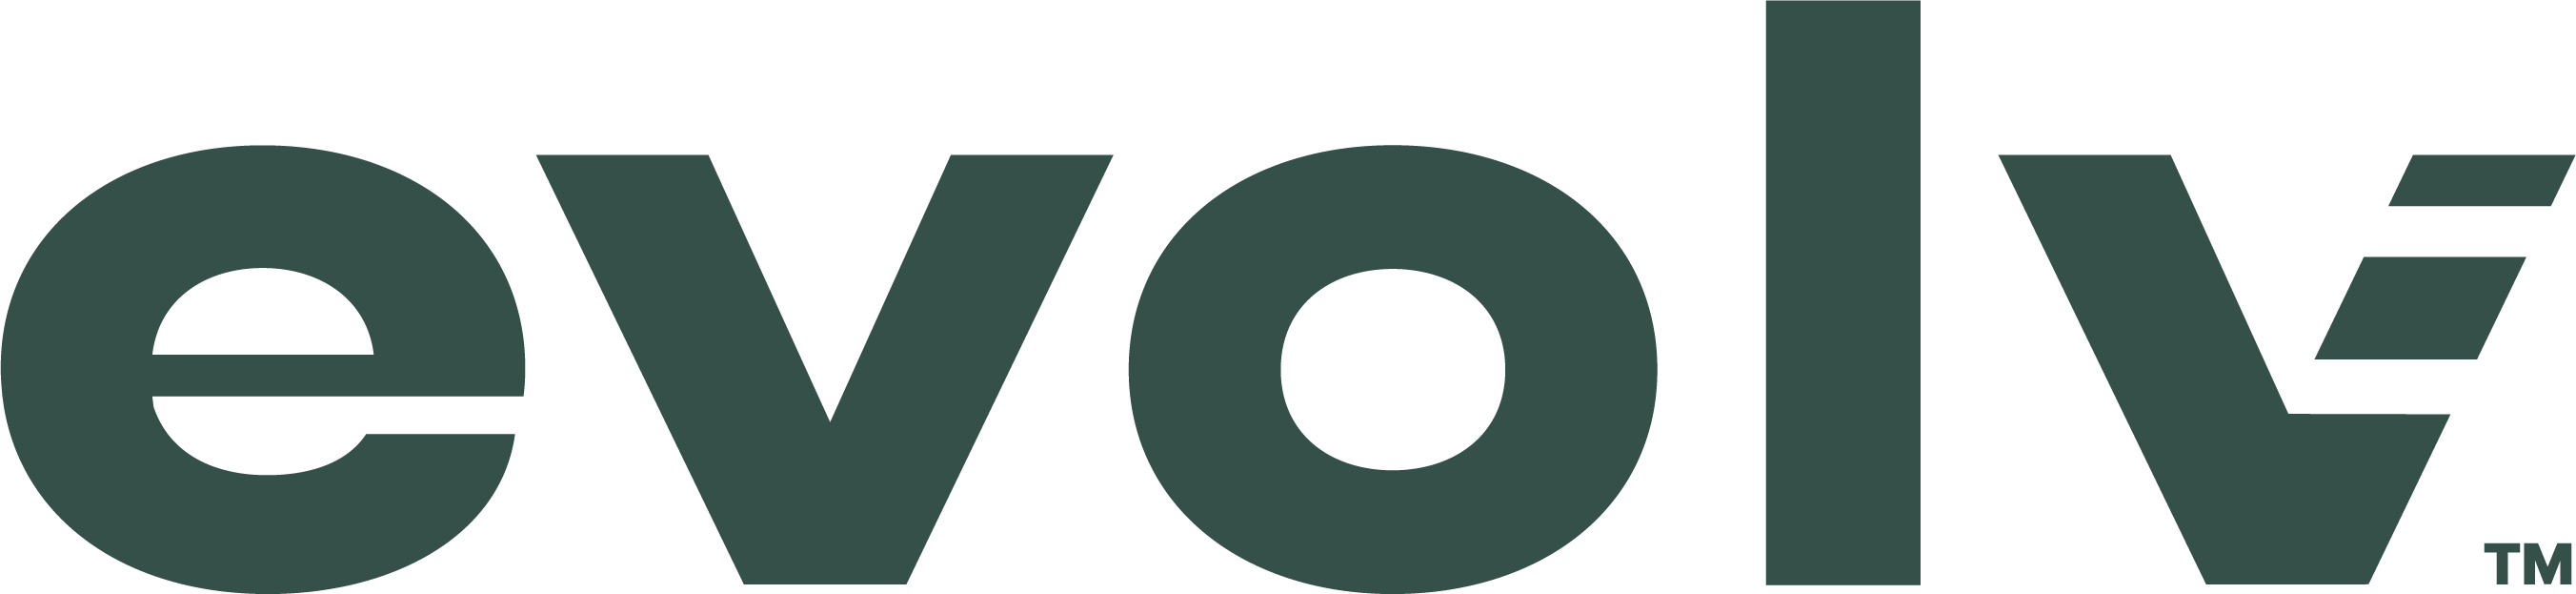 Evolv Logo (Break Sponsor).png